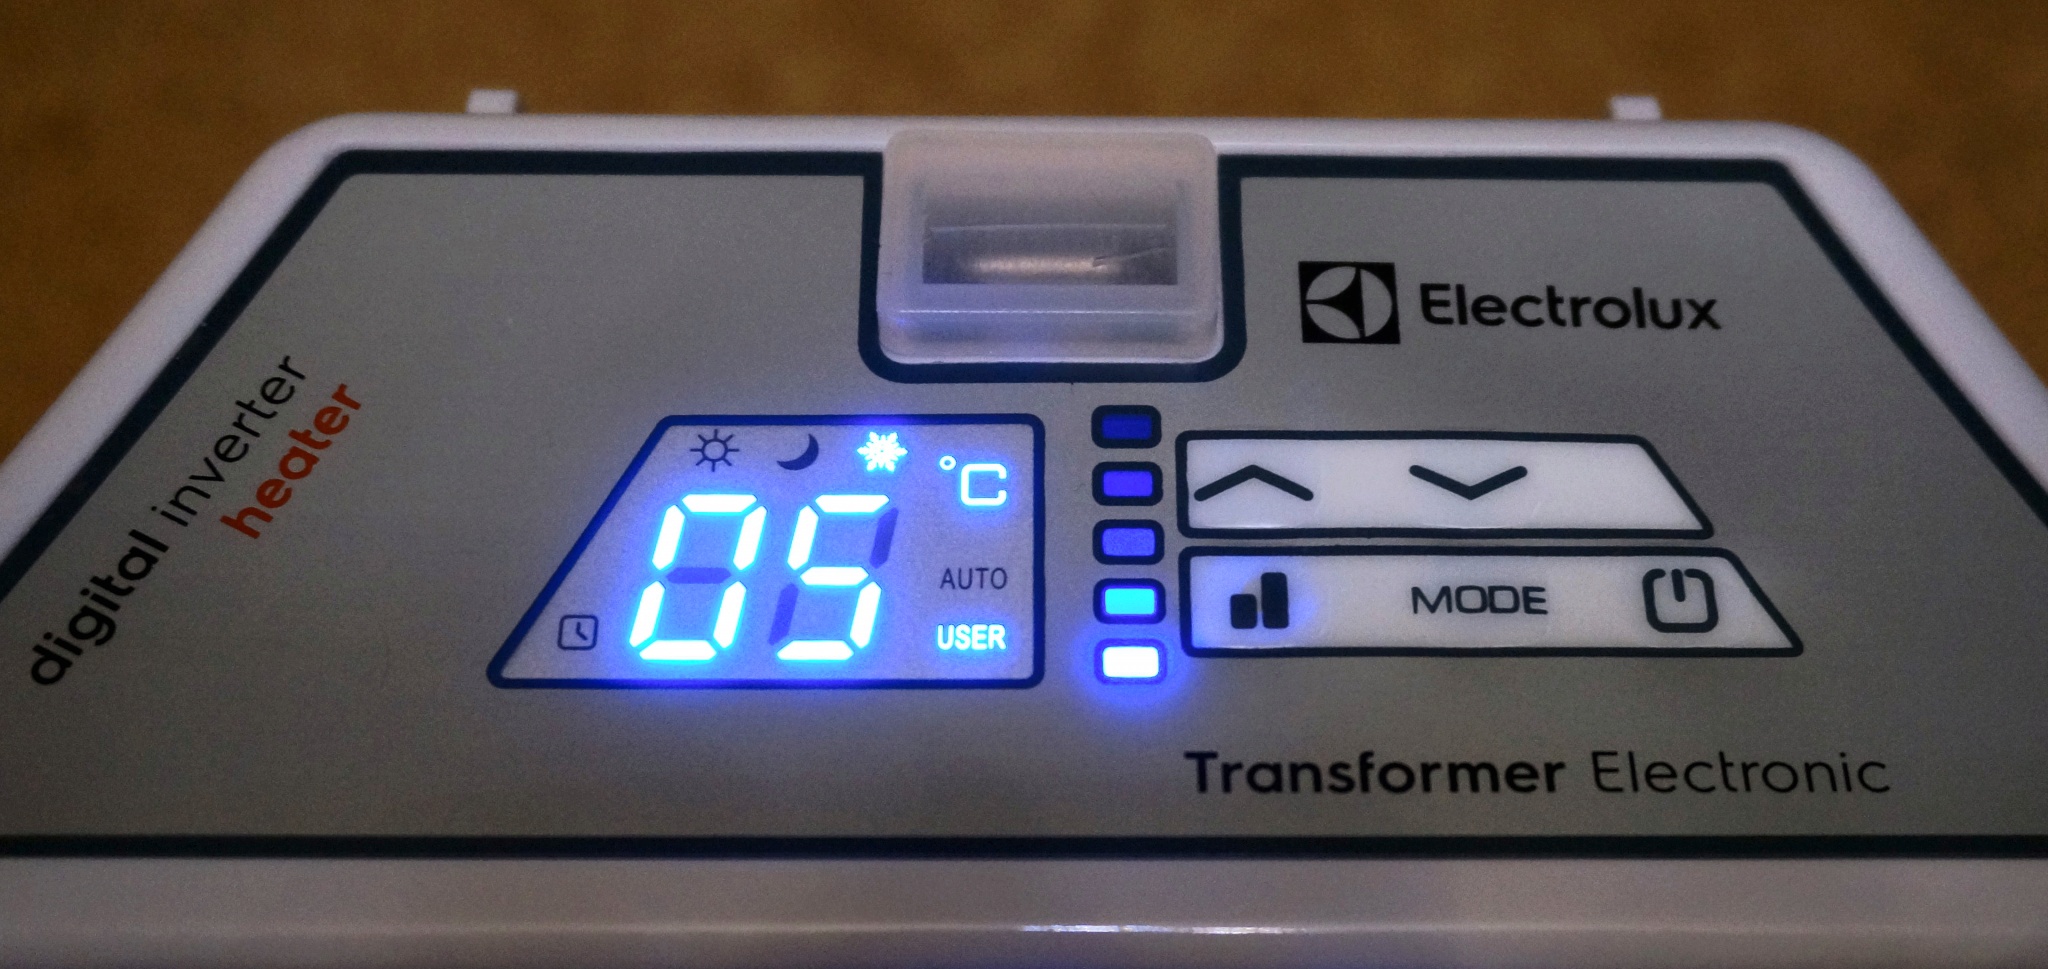 Electrolux ech tui4 transformer. Блок управления конвектора Electrolux Transformer Digital Inverter 3.0. Transformer Digital Inverter ECH/tui3 Electrolux НС-1199056.